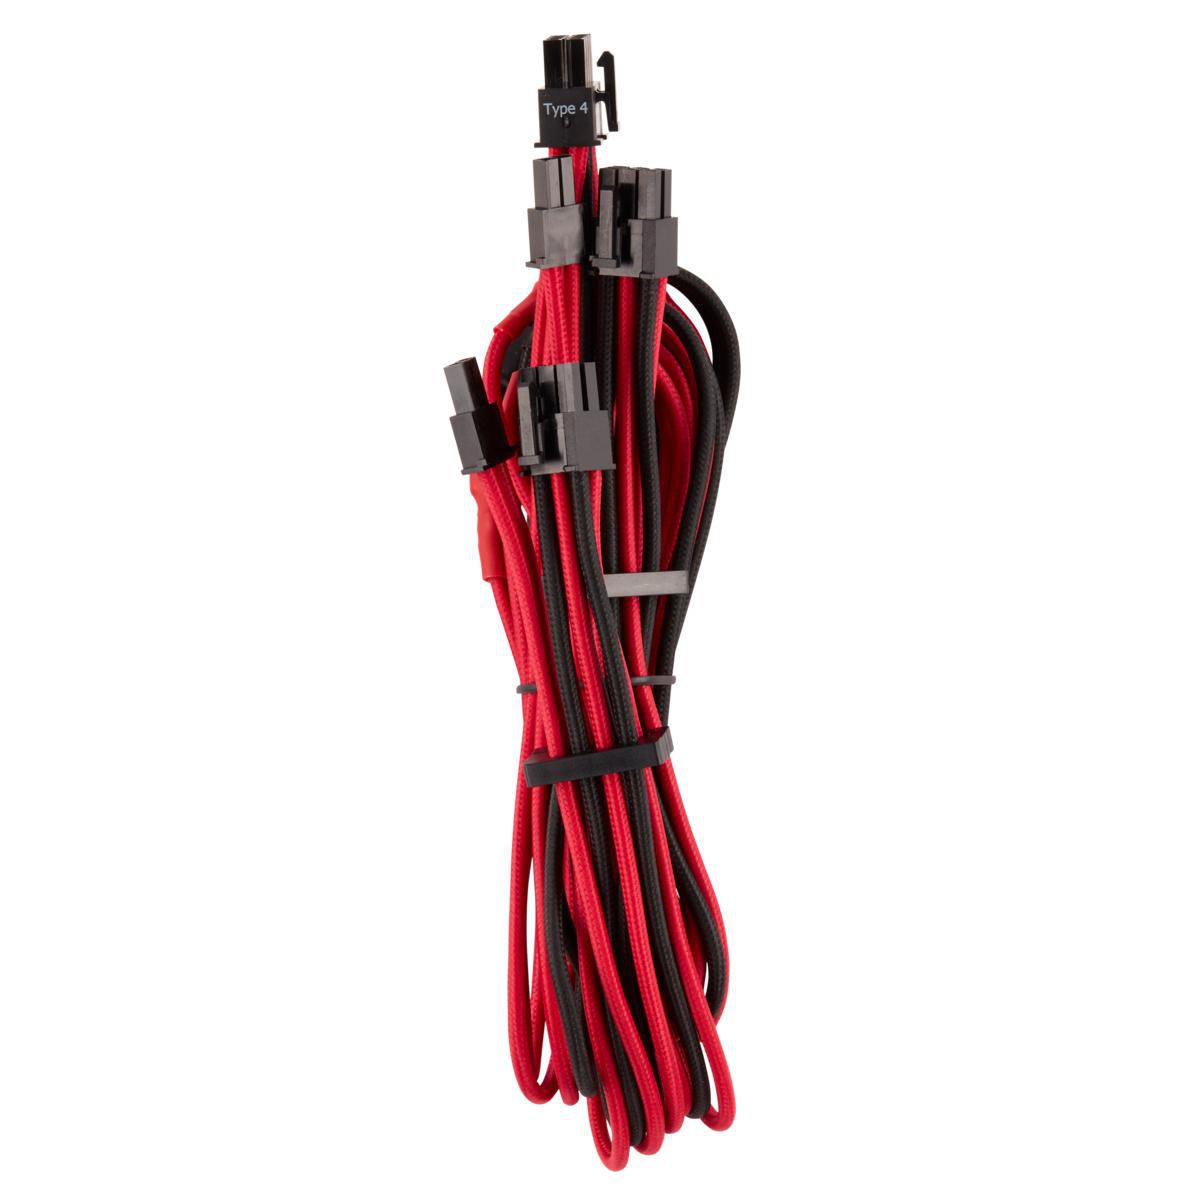 CORSAIR Split PCIe Cable Dual Connector rot / schwarz